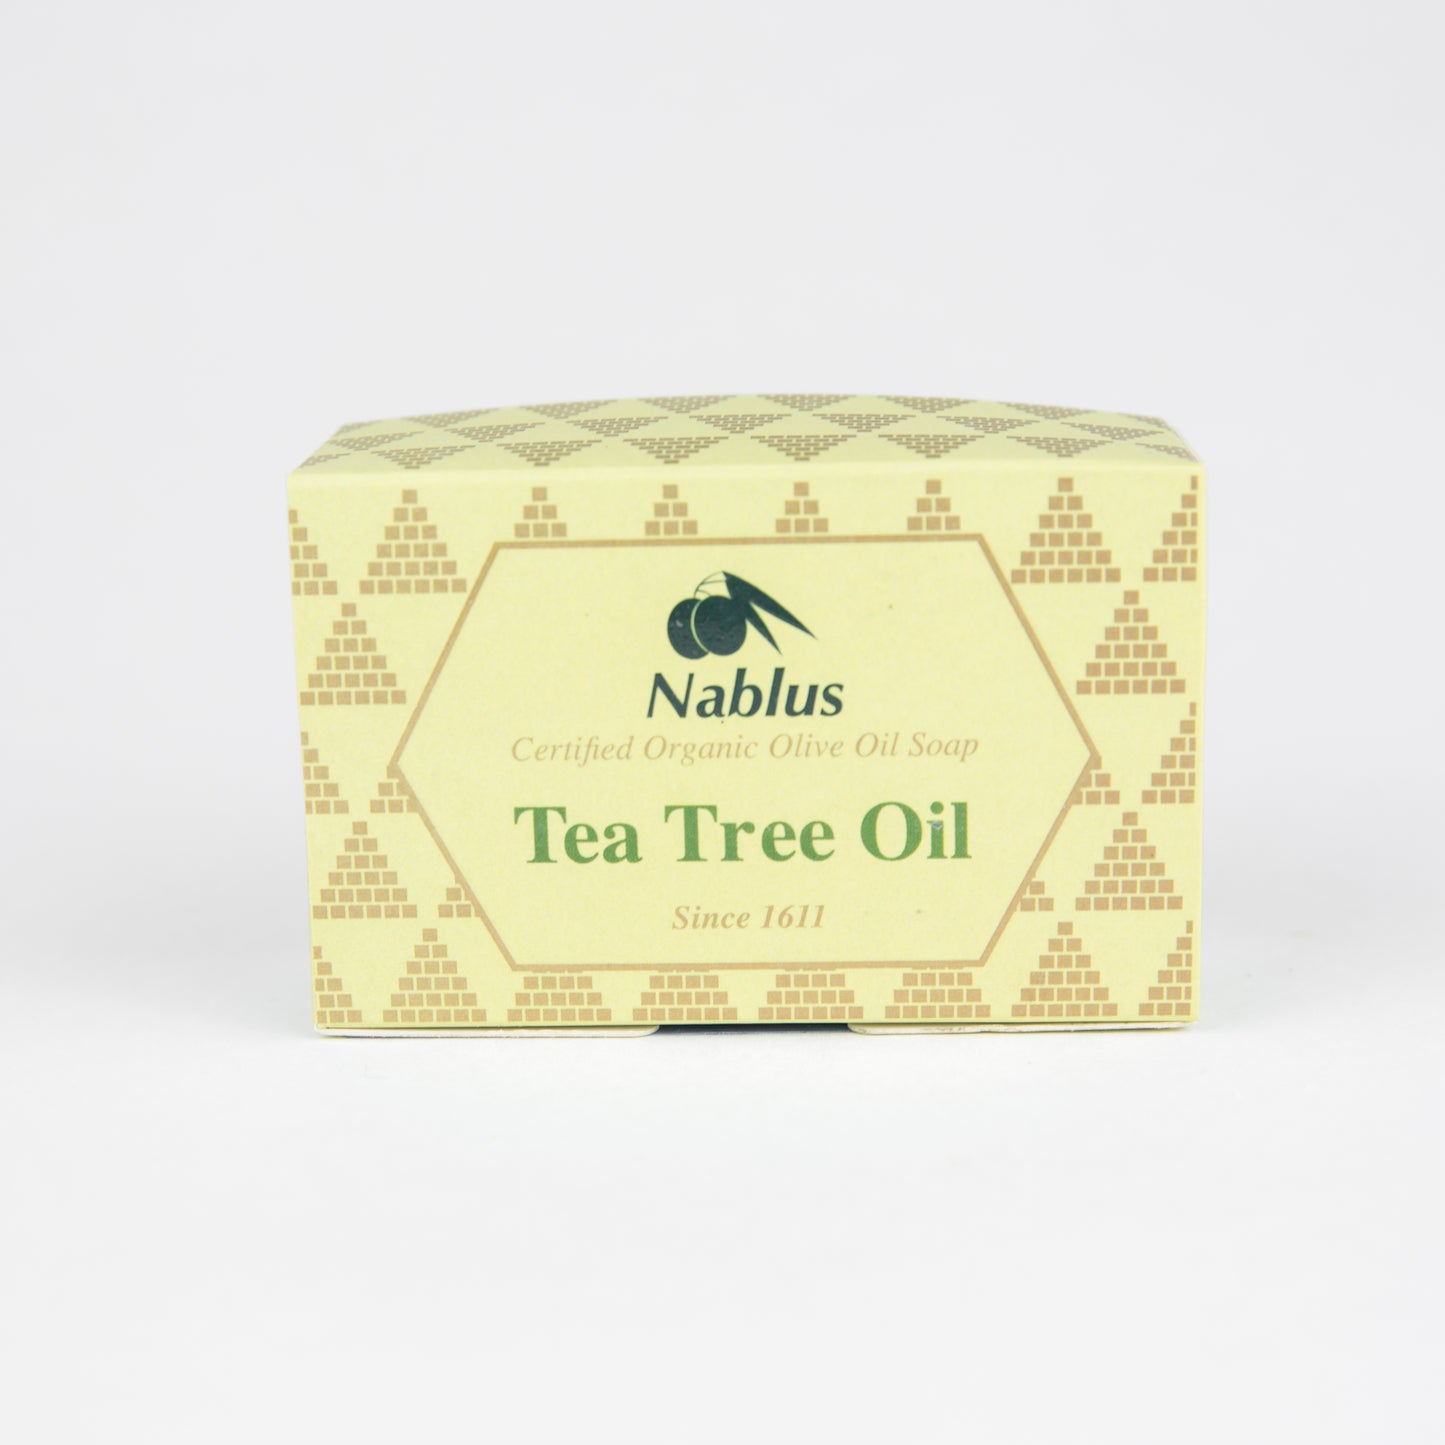 Tea Tree Oil Nablus Soap